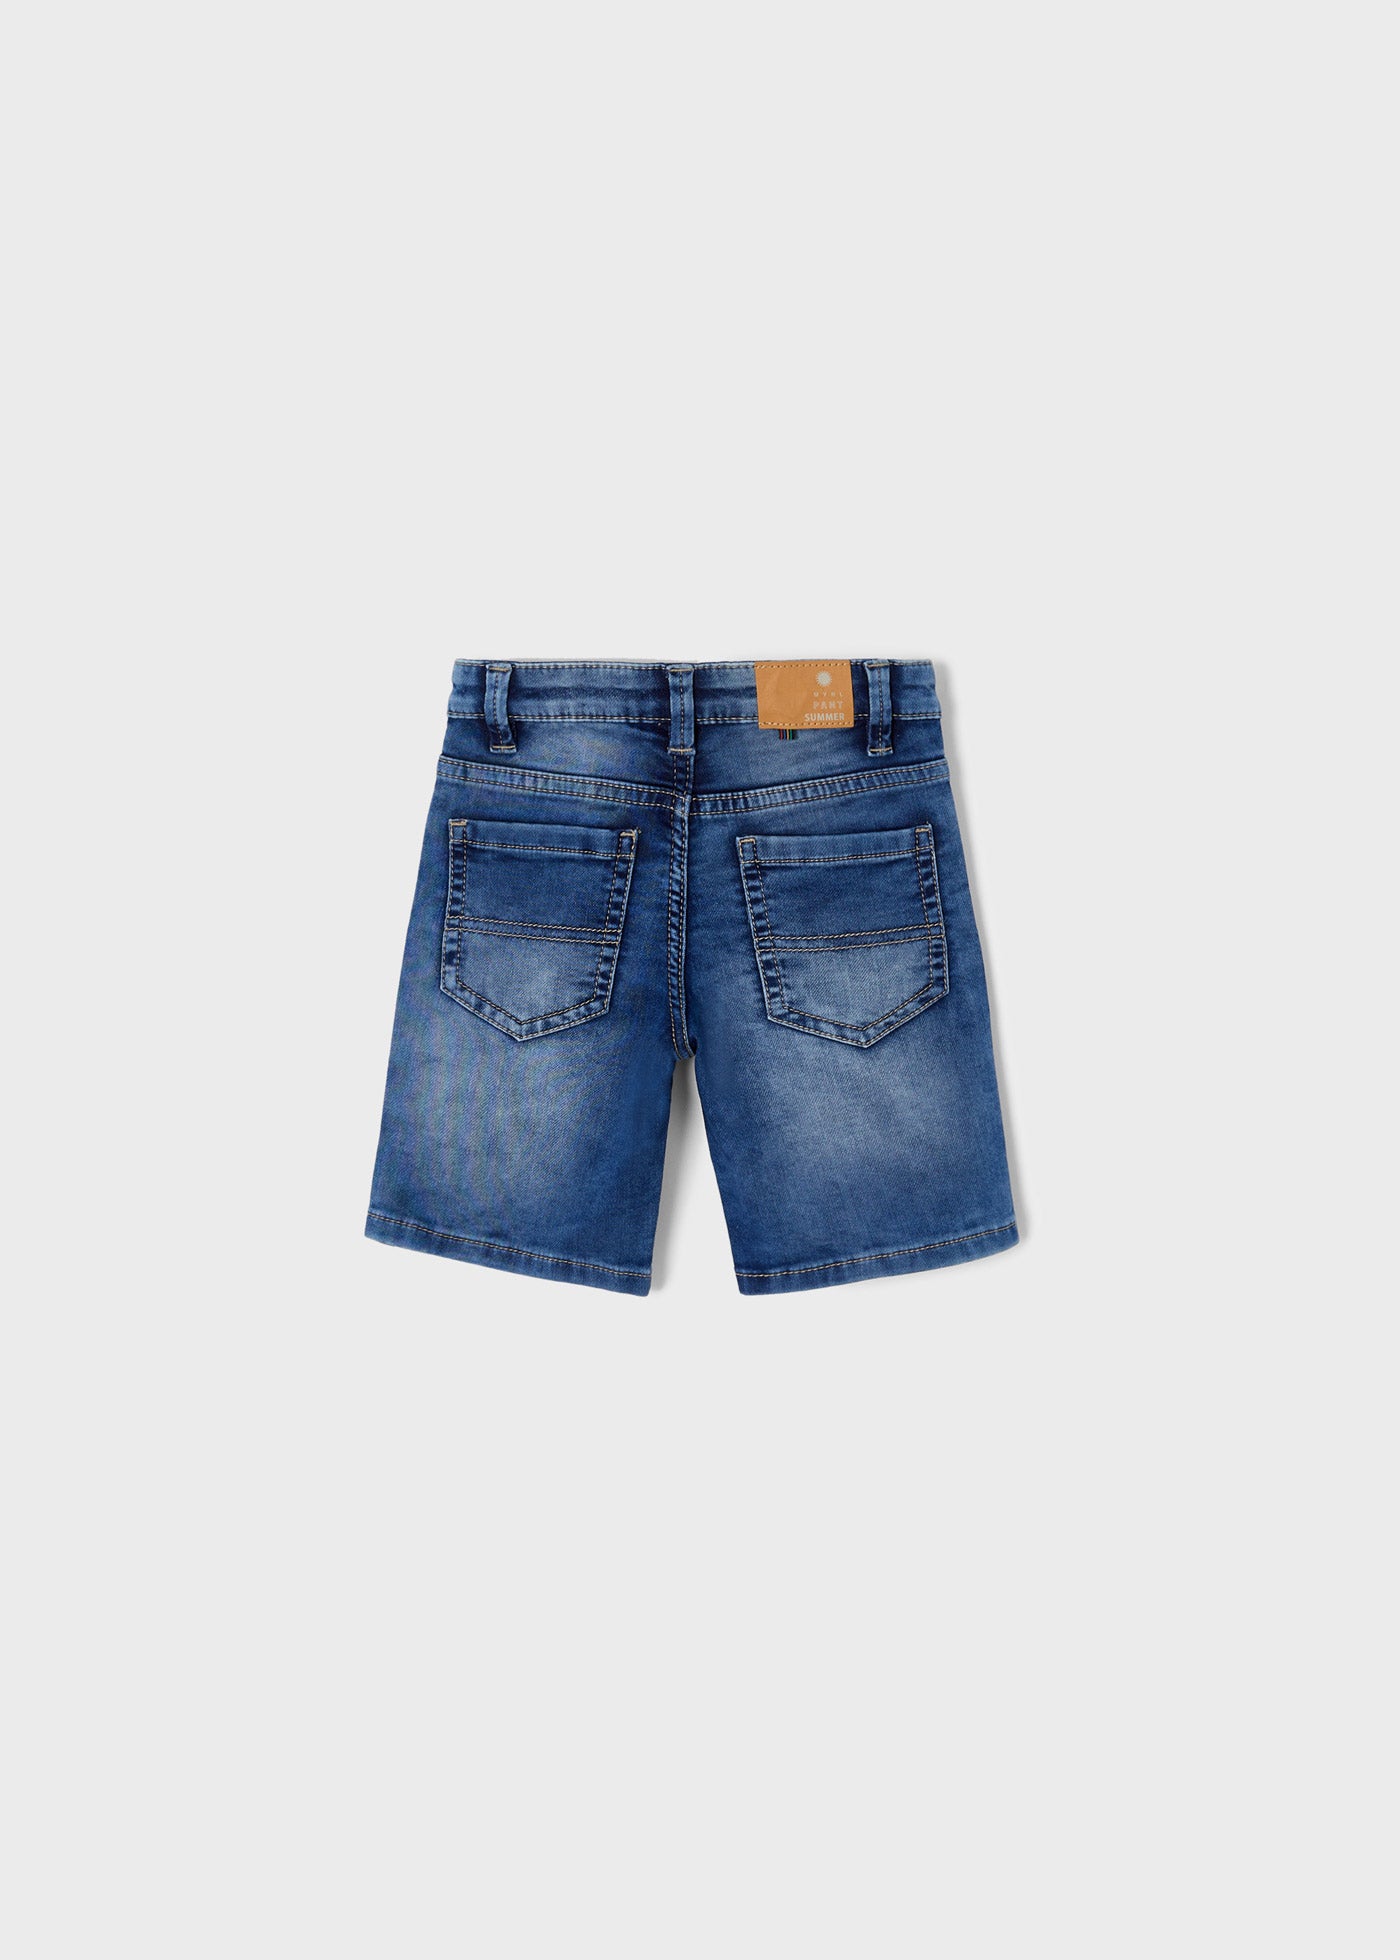 Mayoral Mini Soft Denim Shorts_ Medium Blue 3261-28